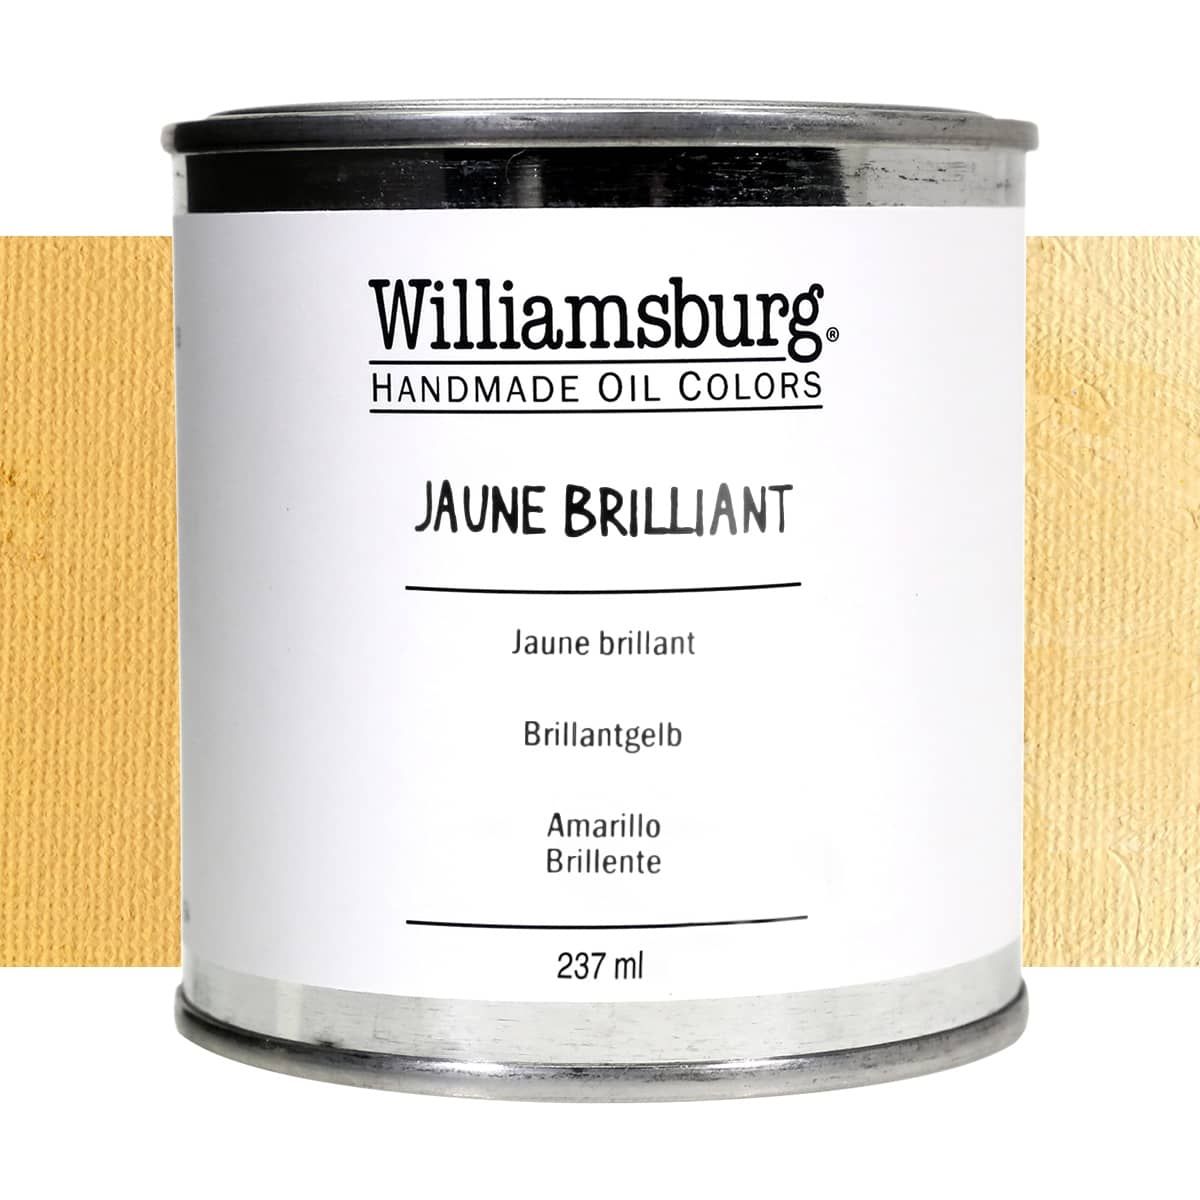 Williamsburg Oil Color 237 ml Can Jaune Brilliant